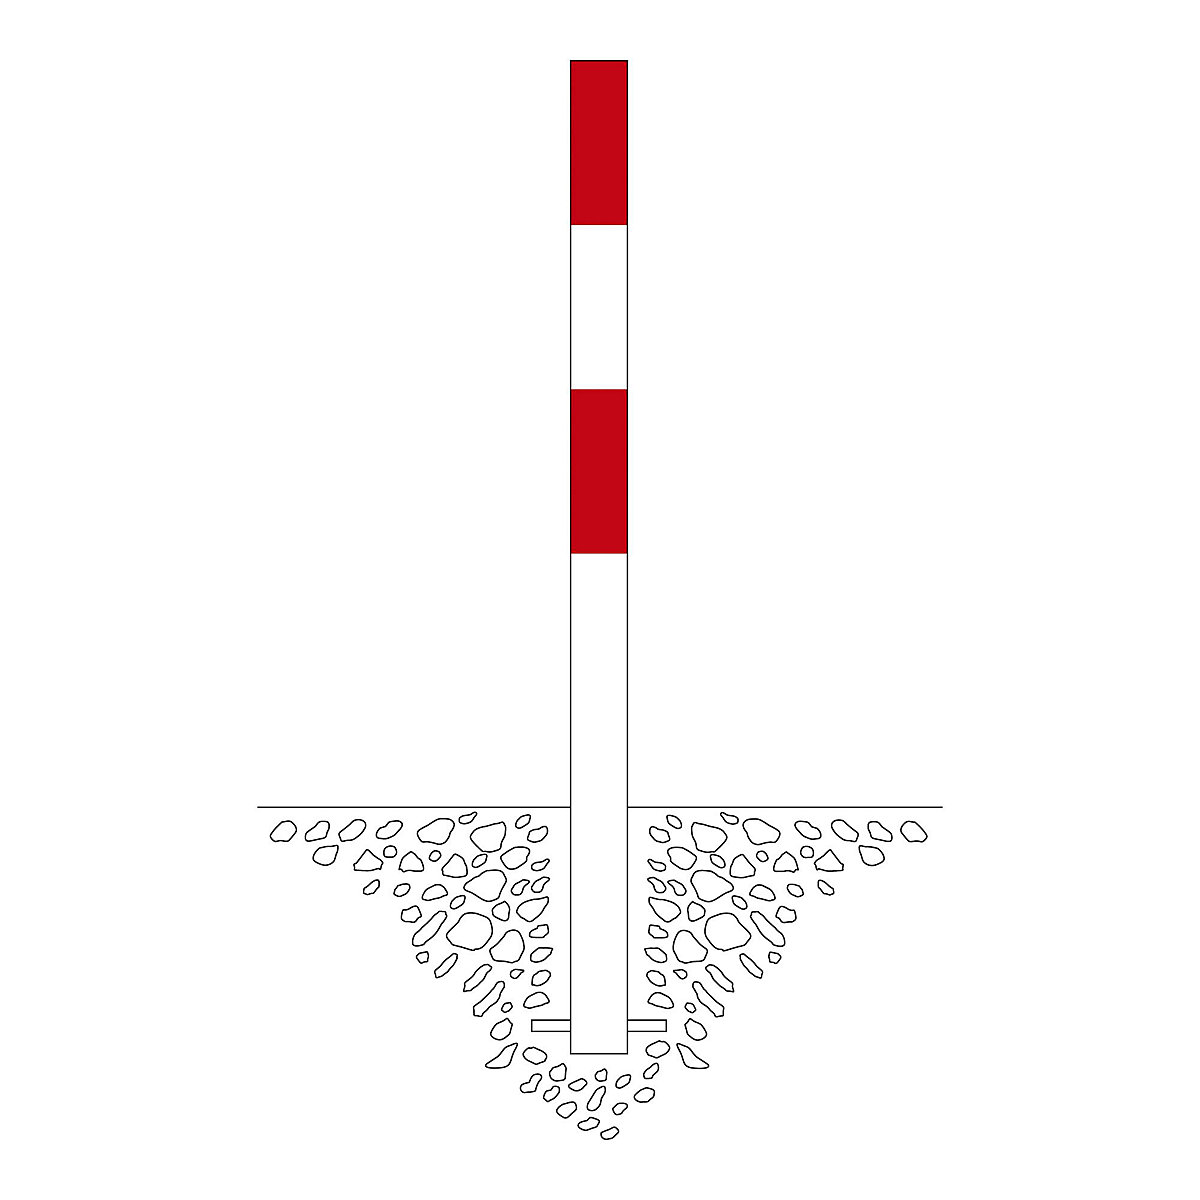 Słupek odgradzający, do wbetonowania, Ø 76 mm, lakierowany na czerwono-biały, 2 zaczepy-5